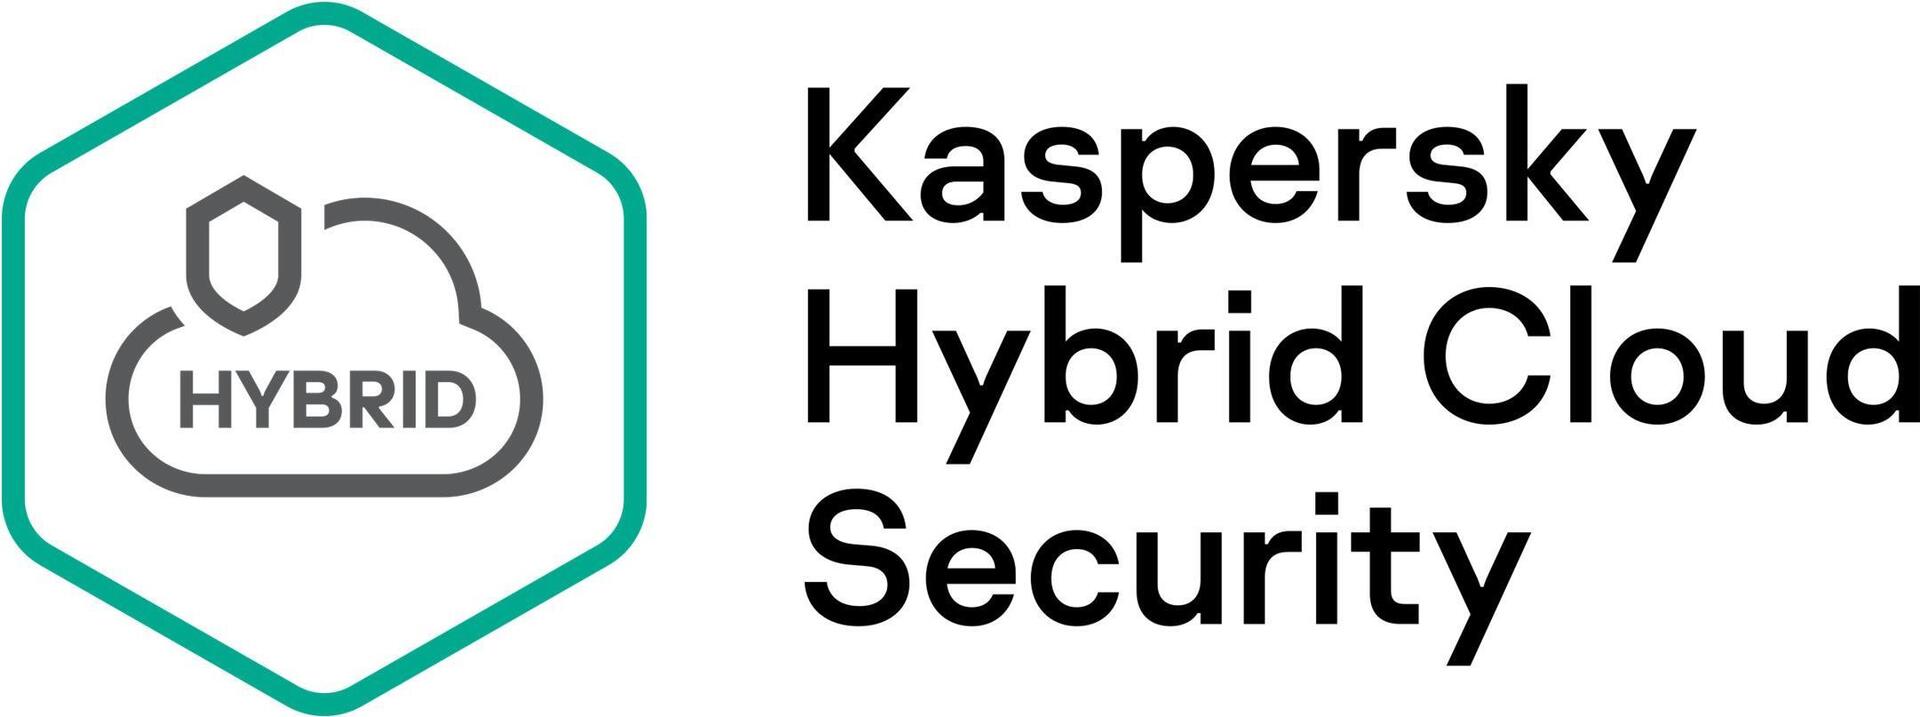 Kaspersky Hybrid Cloud Security Desktop (KL4155XARF8)